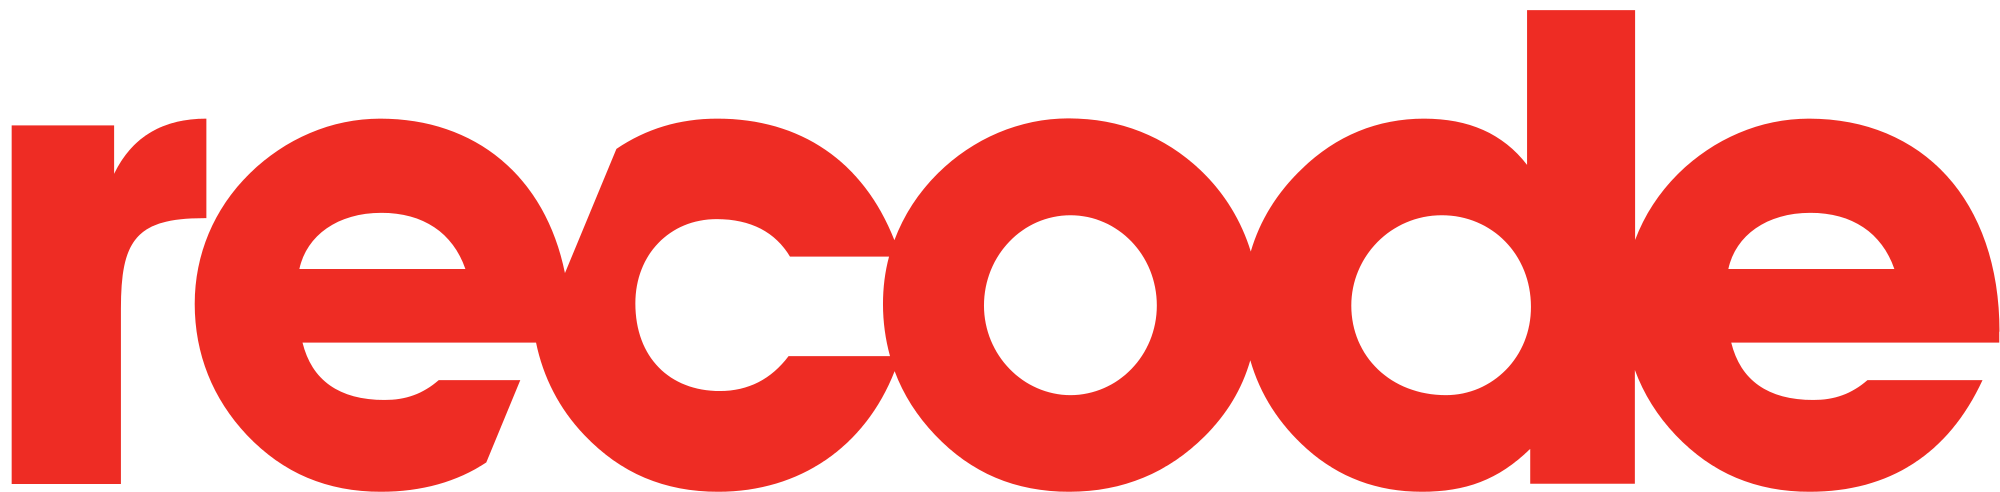 Recode_logo_2016.svg